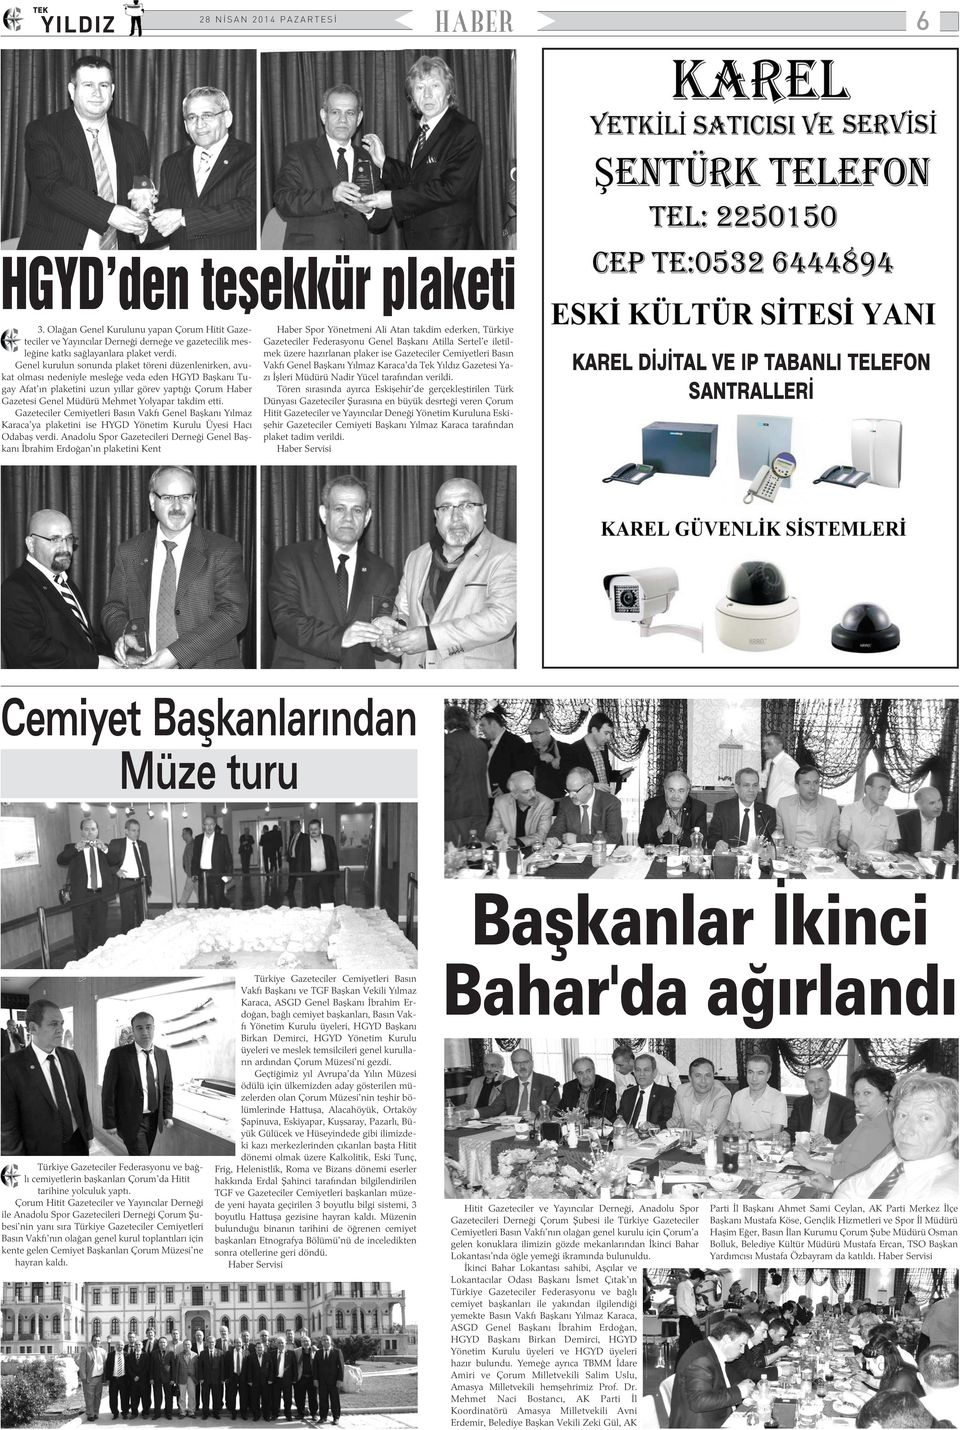 Yolyapar takdim etti. Gazeteciler Cemiyetleri Basýn Vakfý Genel Baþkaný Yýlmaz Karaca'ya plaketini ise HYGD Yönetim Kurulu Üyesi Hacý Odabaþ verdi.